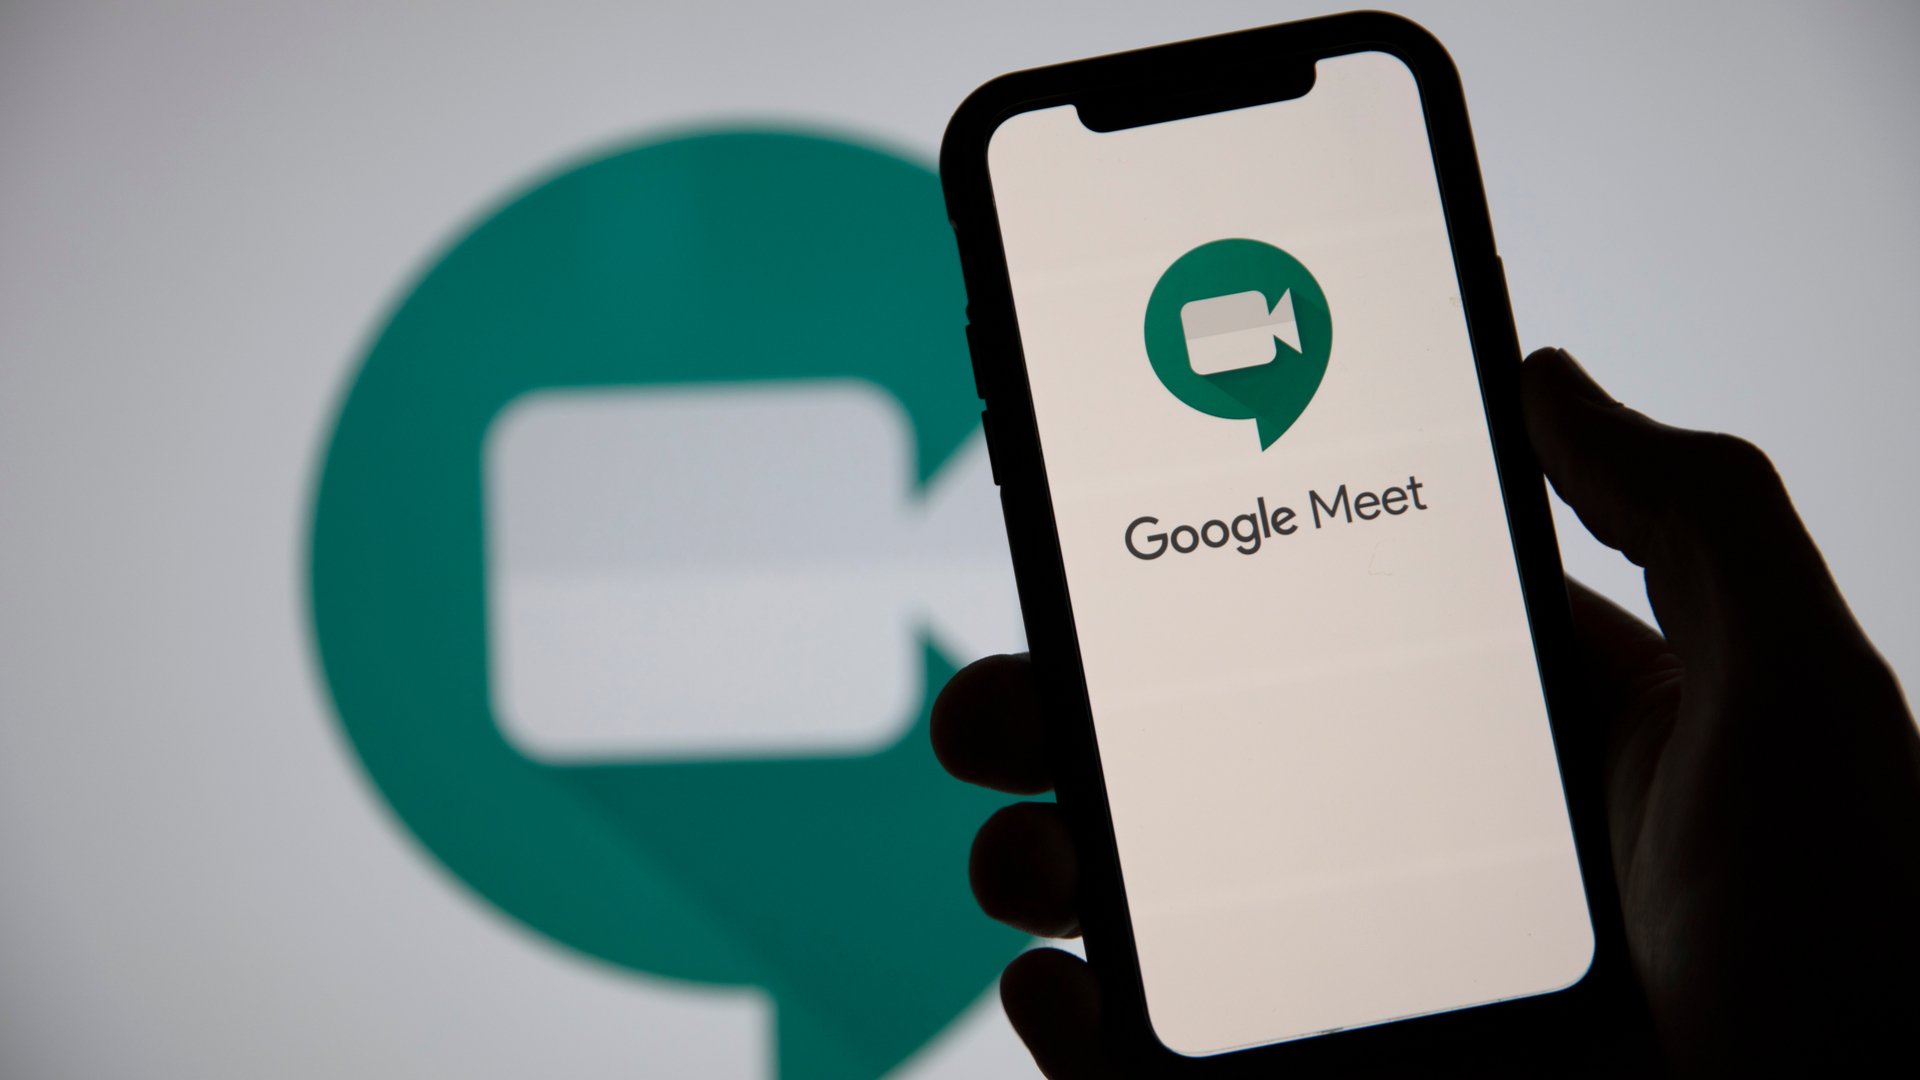 Con questa nuova fusione, Google Meet verrà rinominato come 